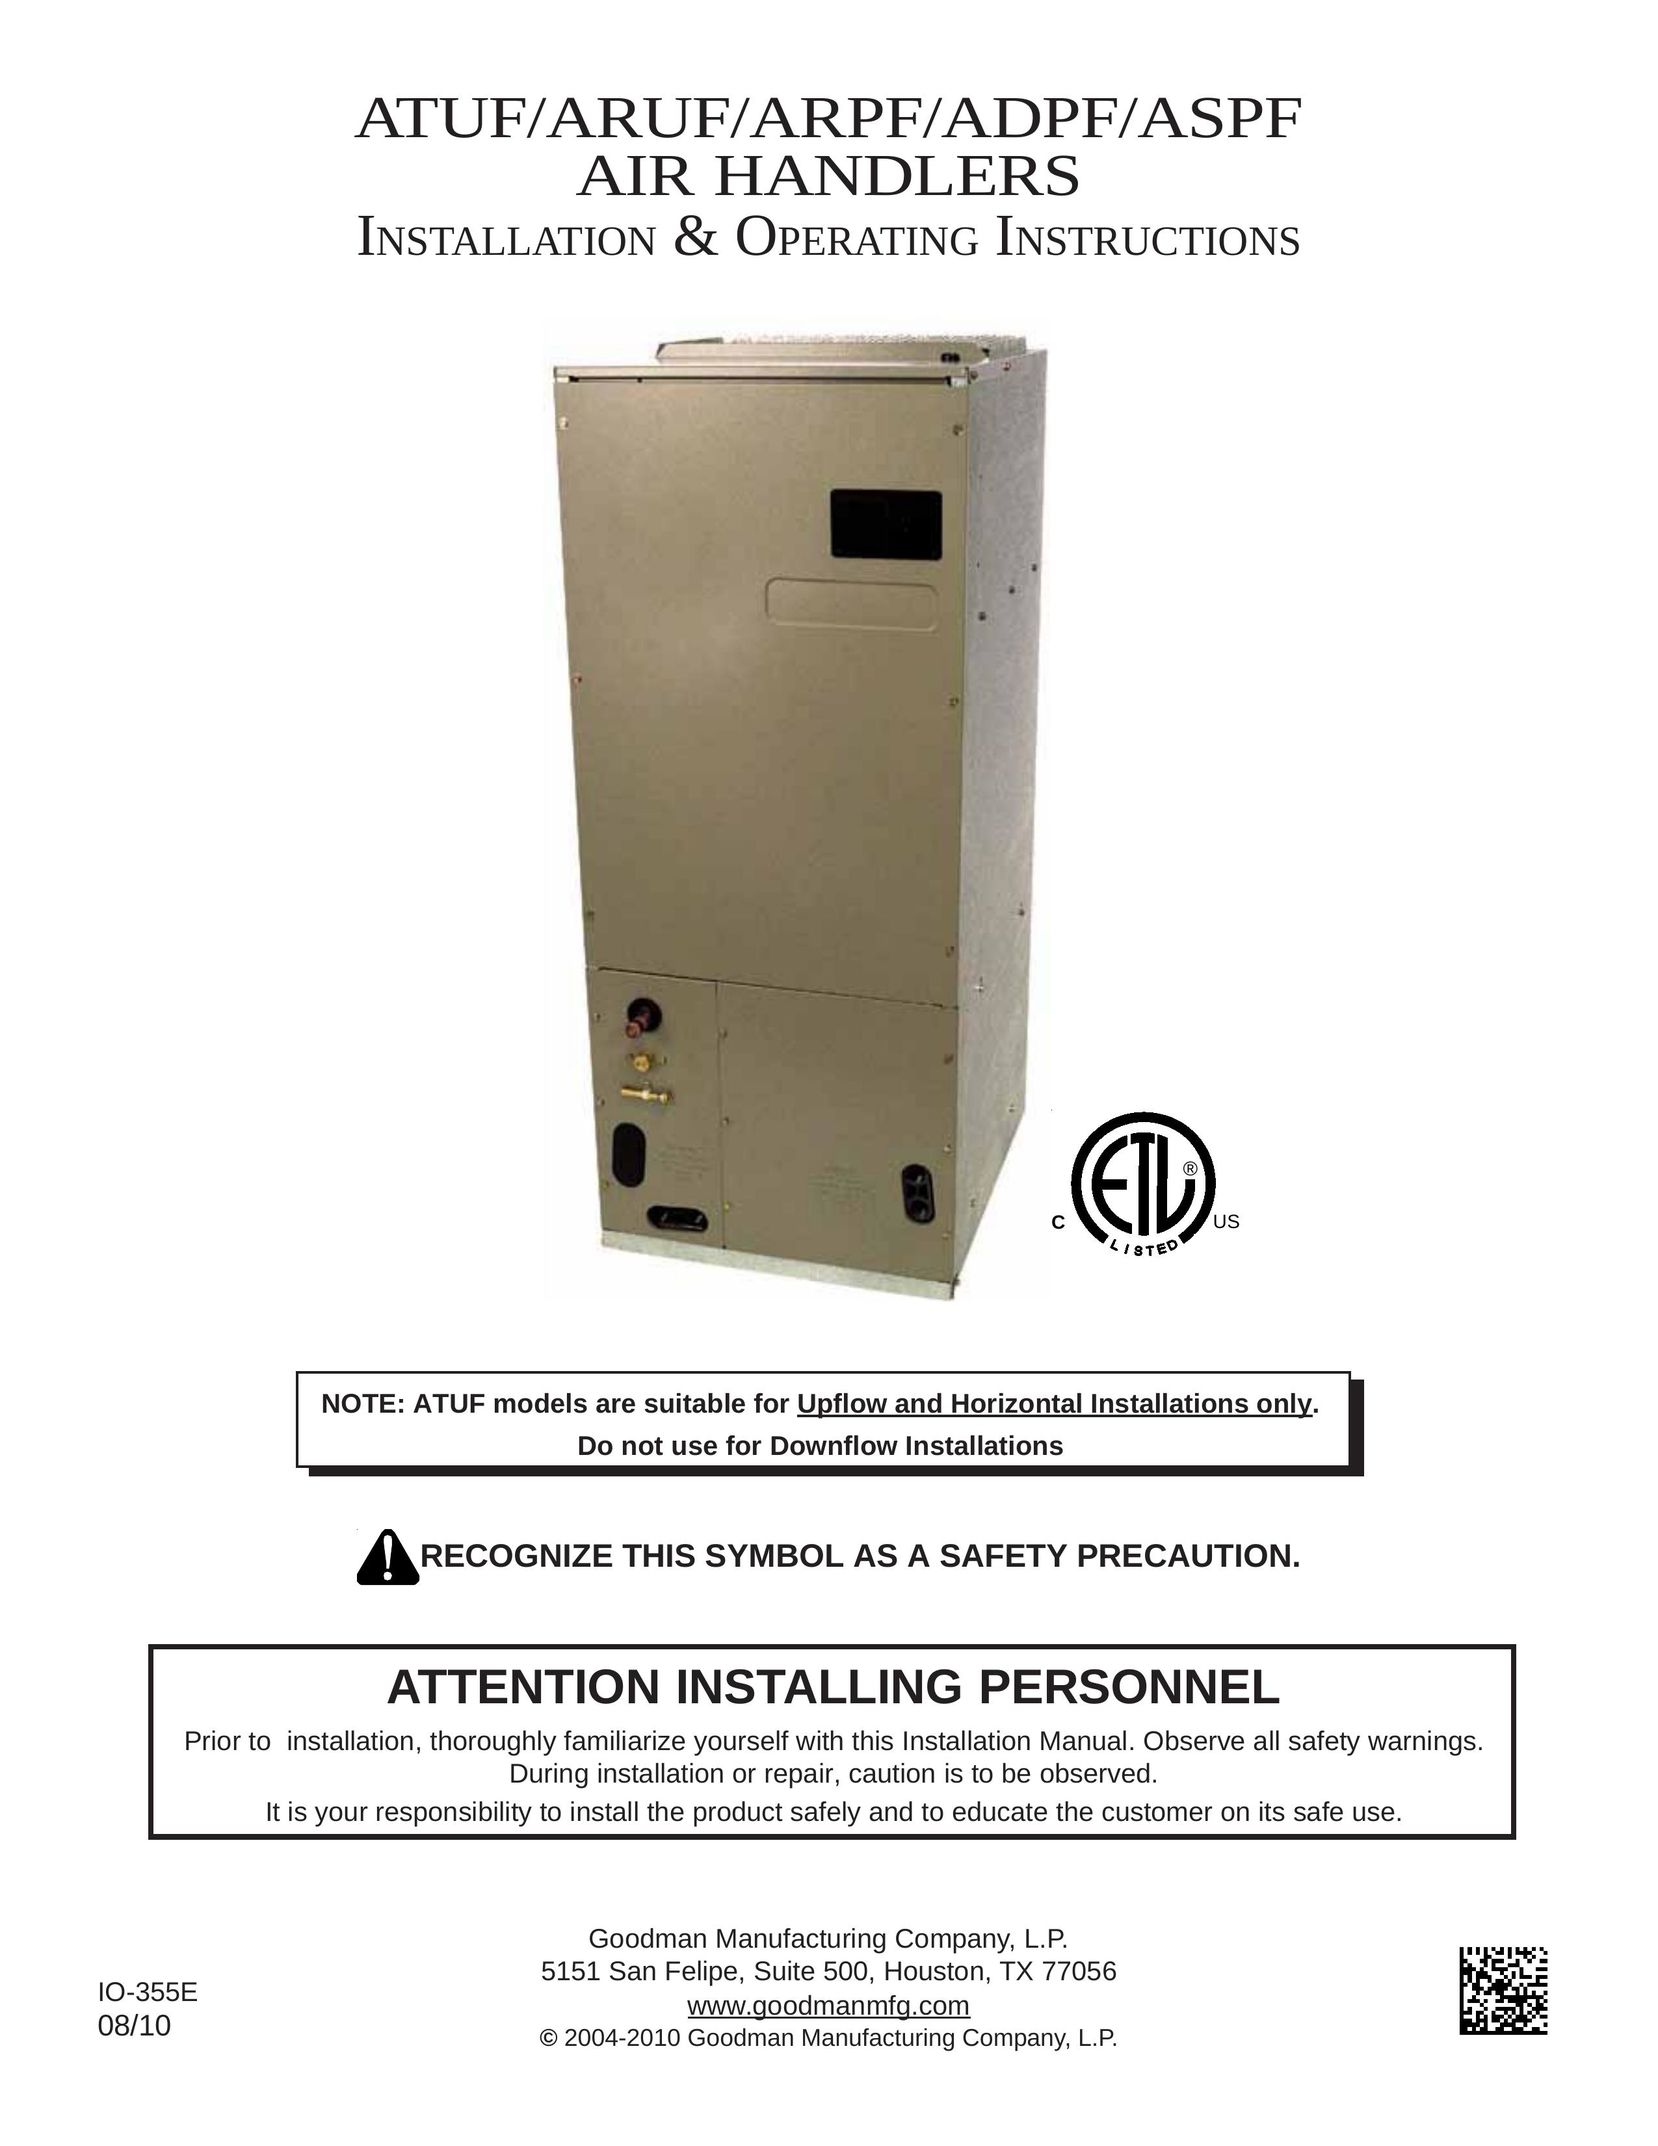 Goodman Mfg ASPF Air Conditioner User Manual